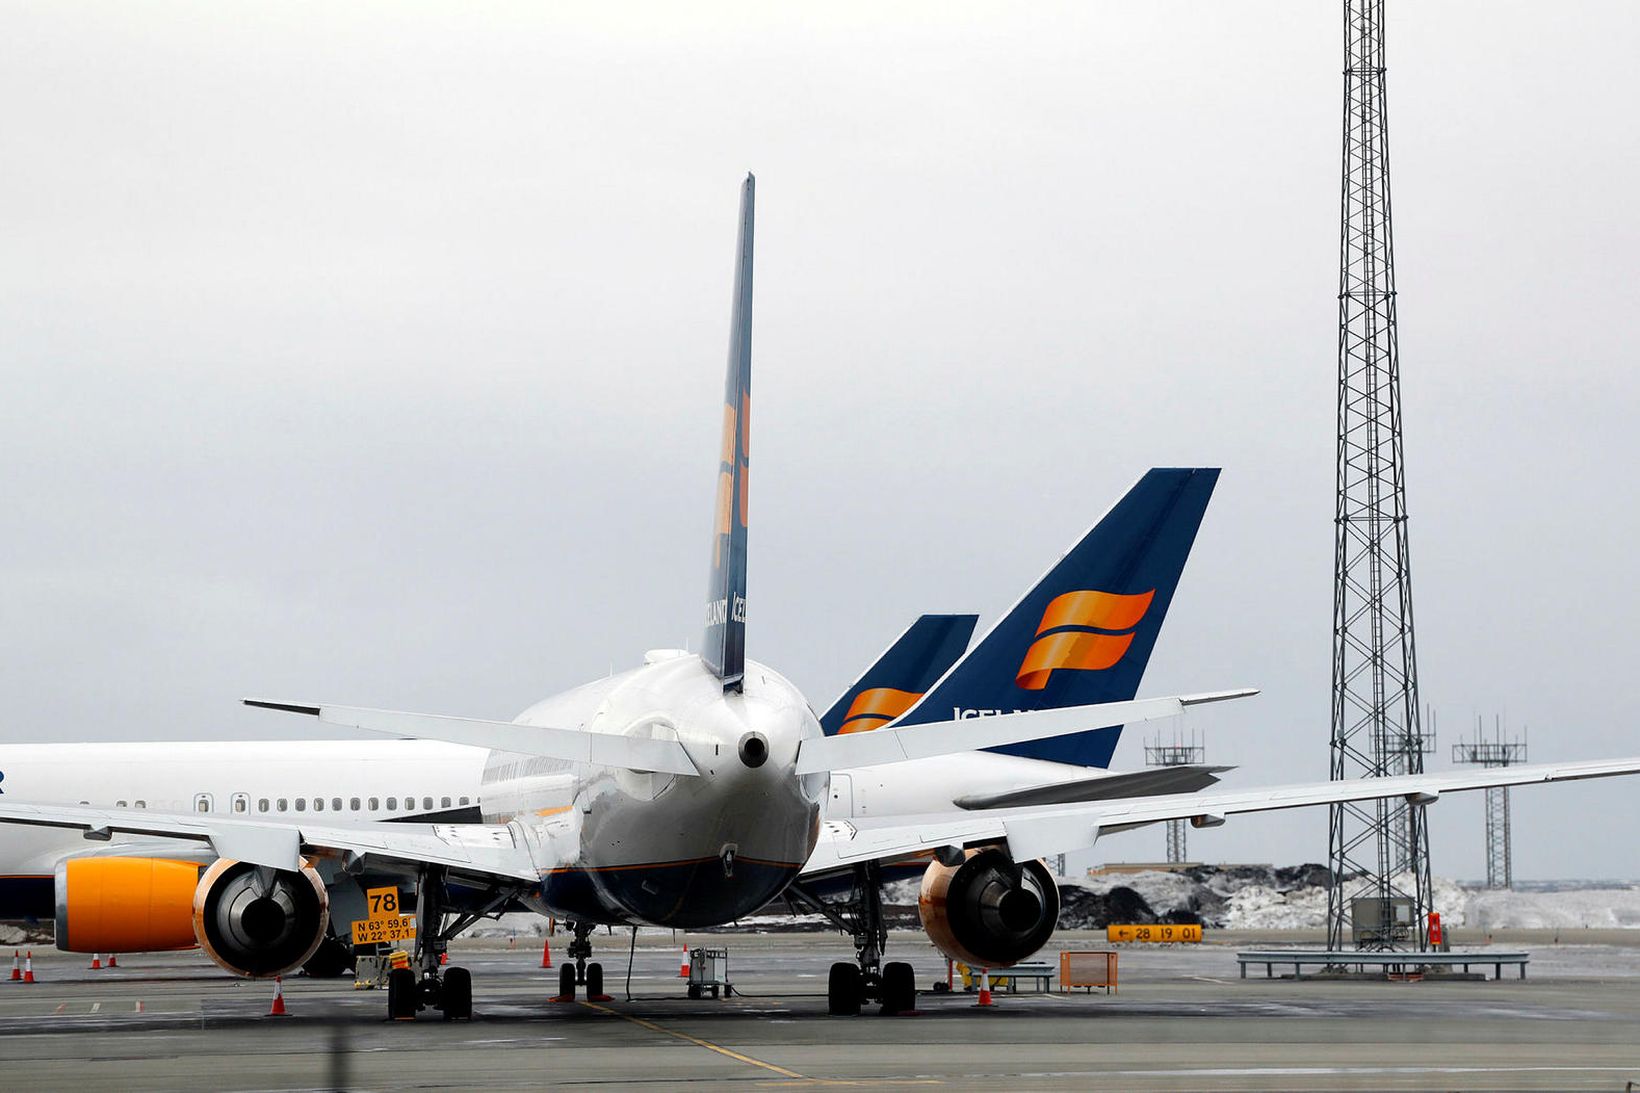 Icelandair Group hefur hækkað mest af fyrirtækjum í Kauphöll.